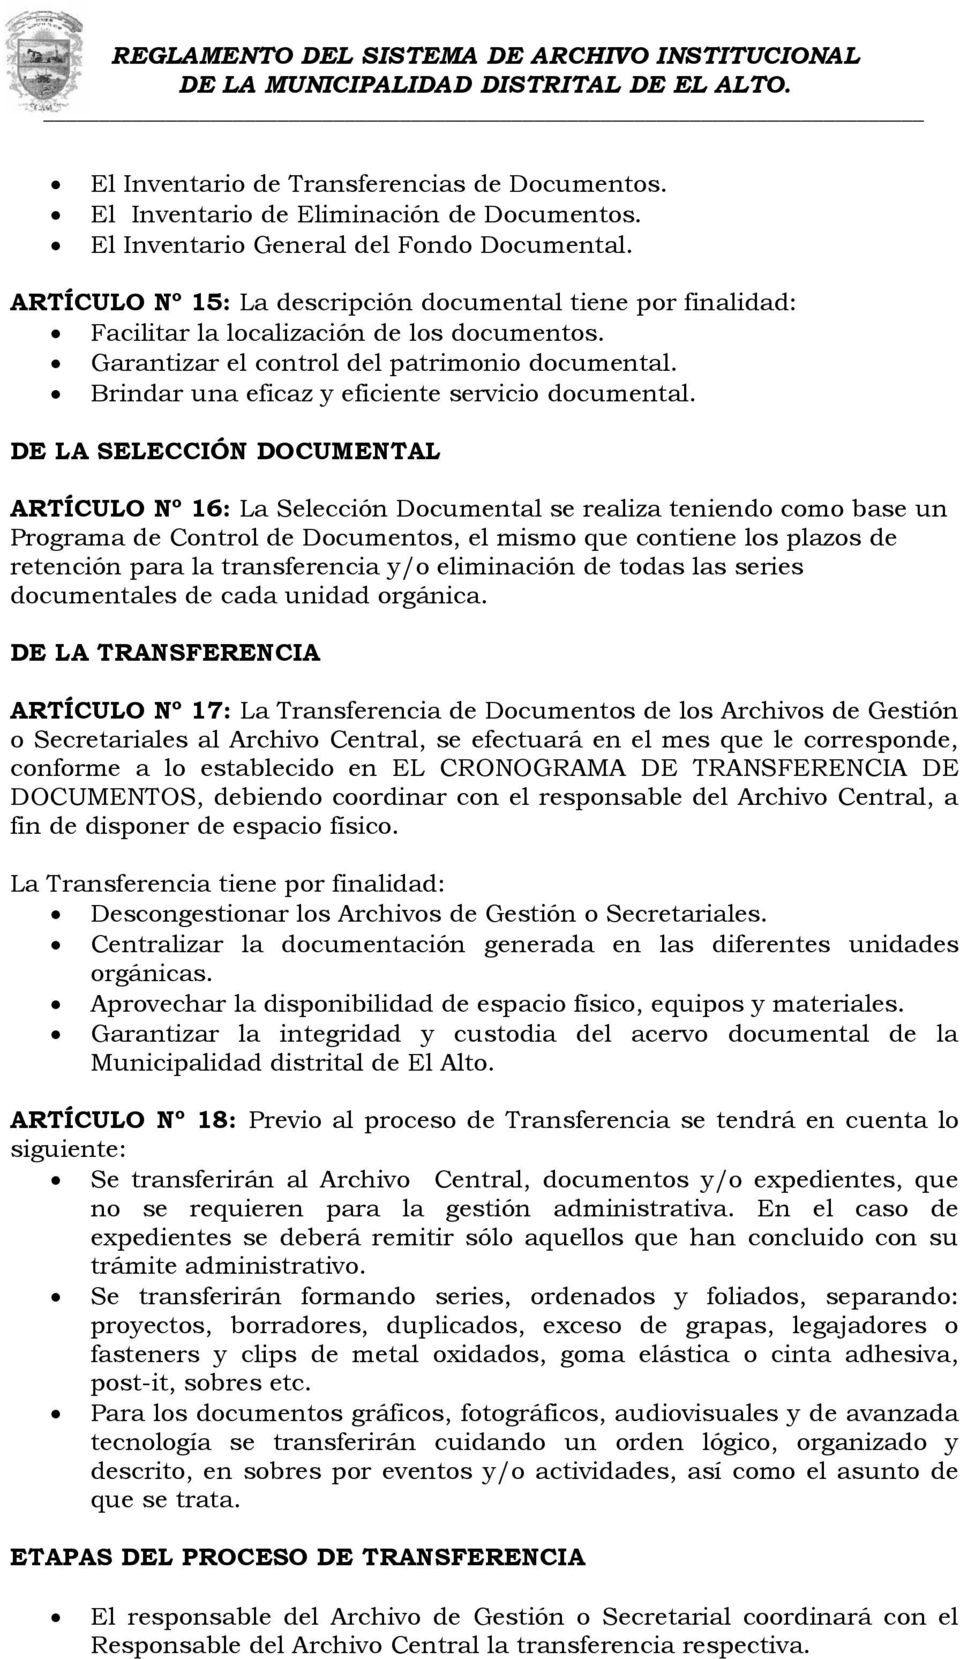 REGLAMENTO DEL SISTEMA DE ARCHIVO INSTITUCIONAL DE LA MUNICIPALIDAD  DISTRITAL DE EL ALTO. - PDF Descargar libre